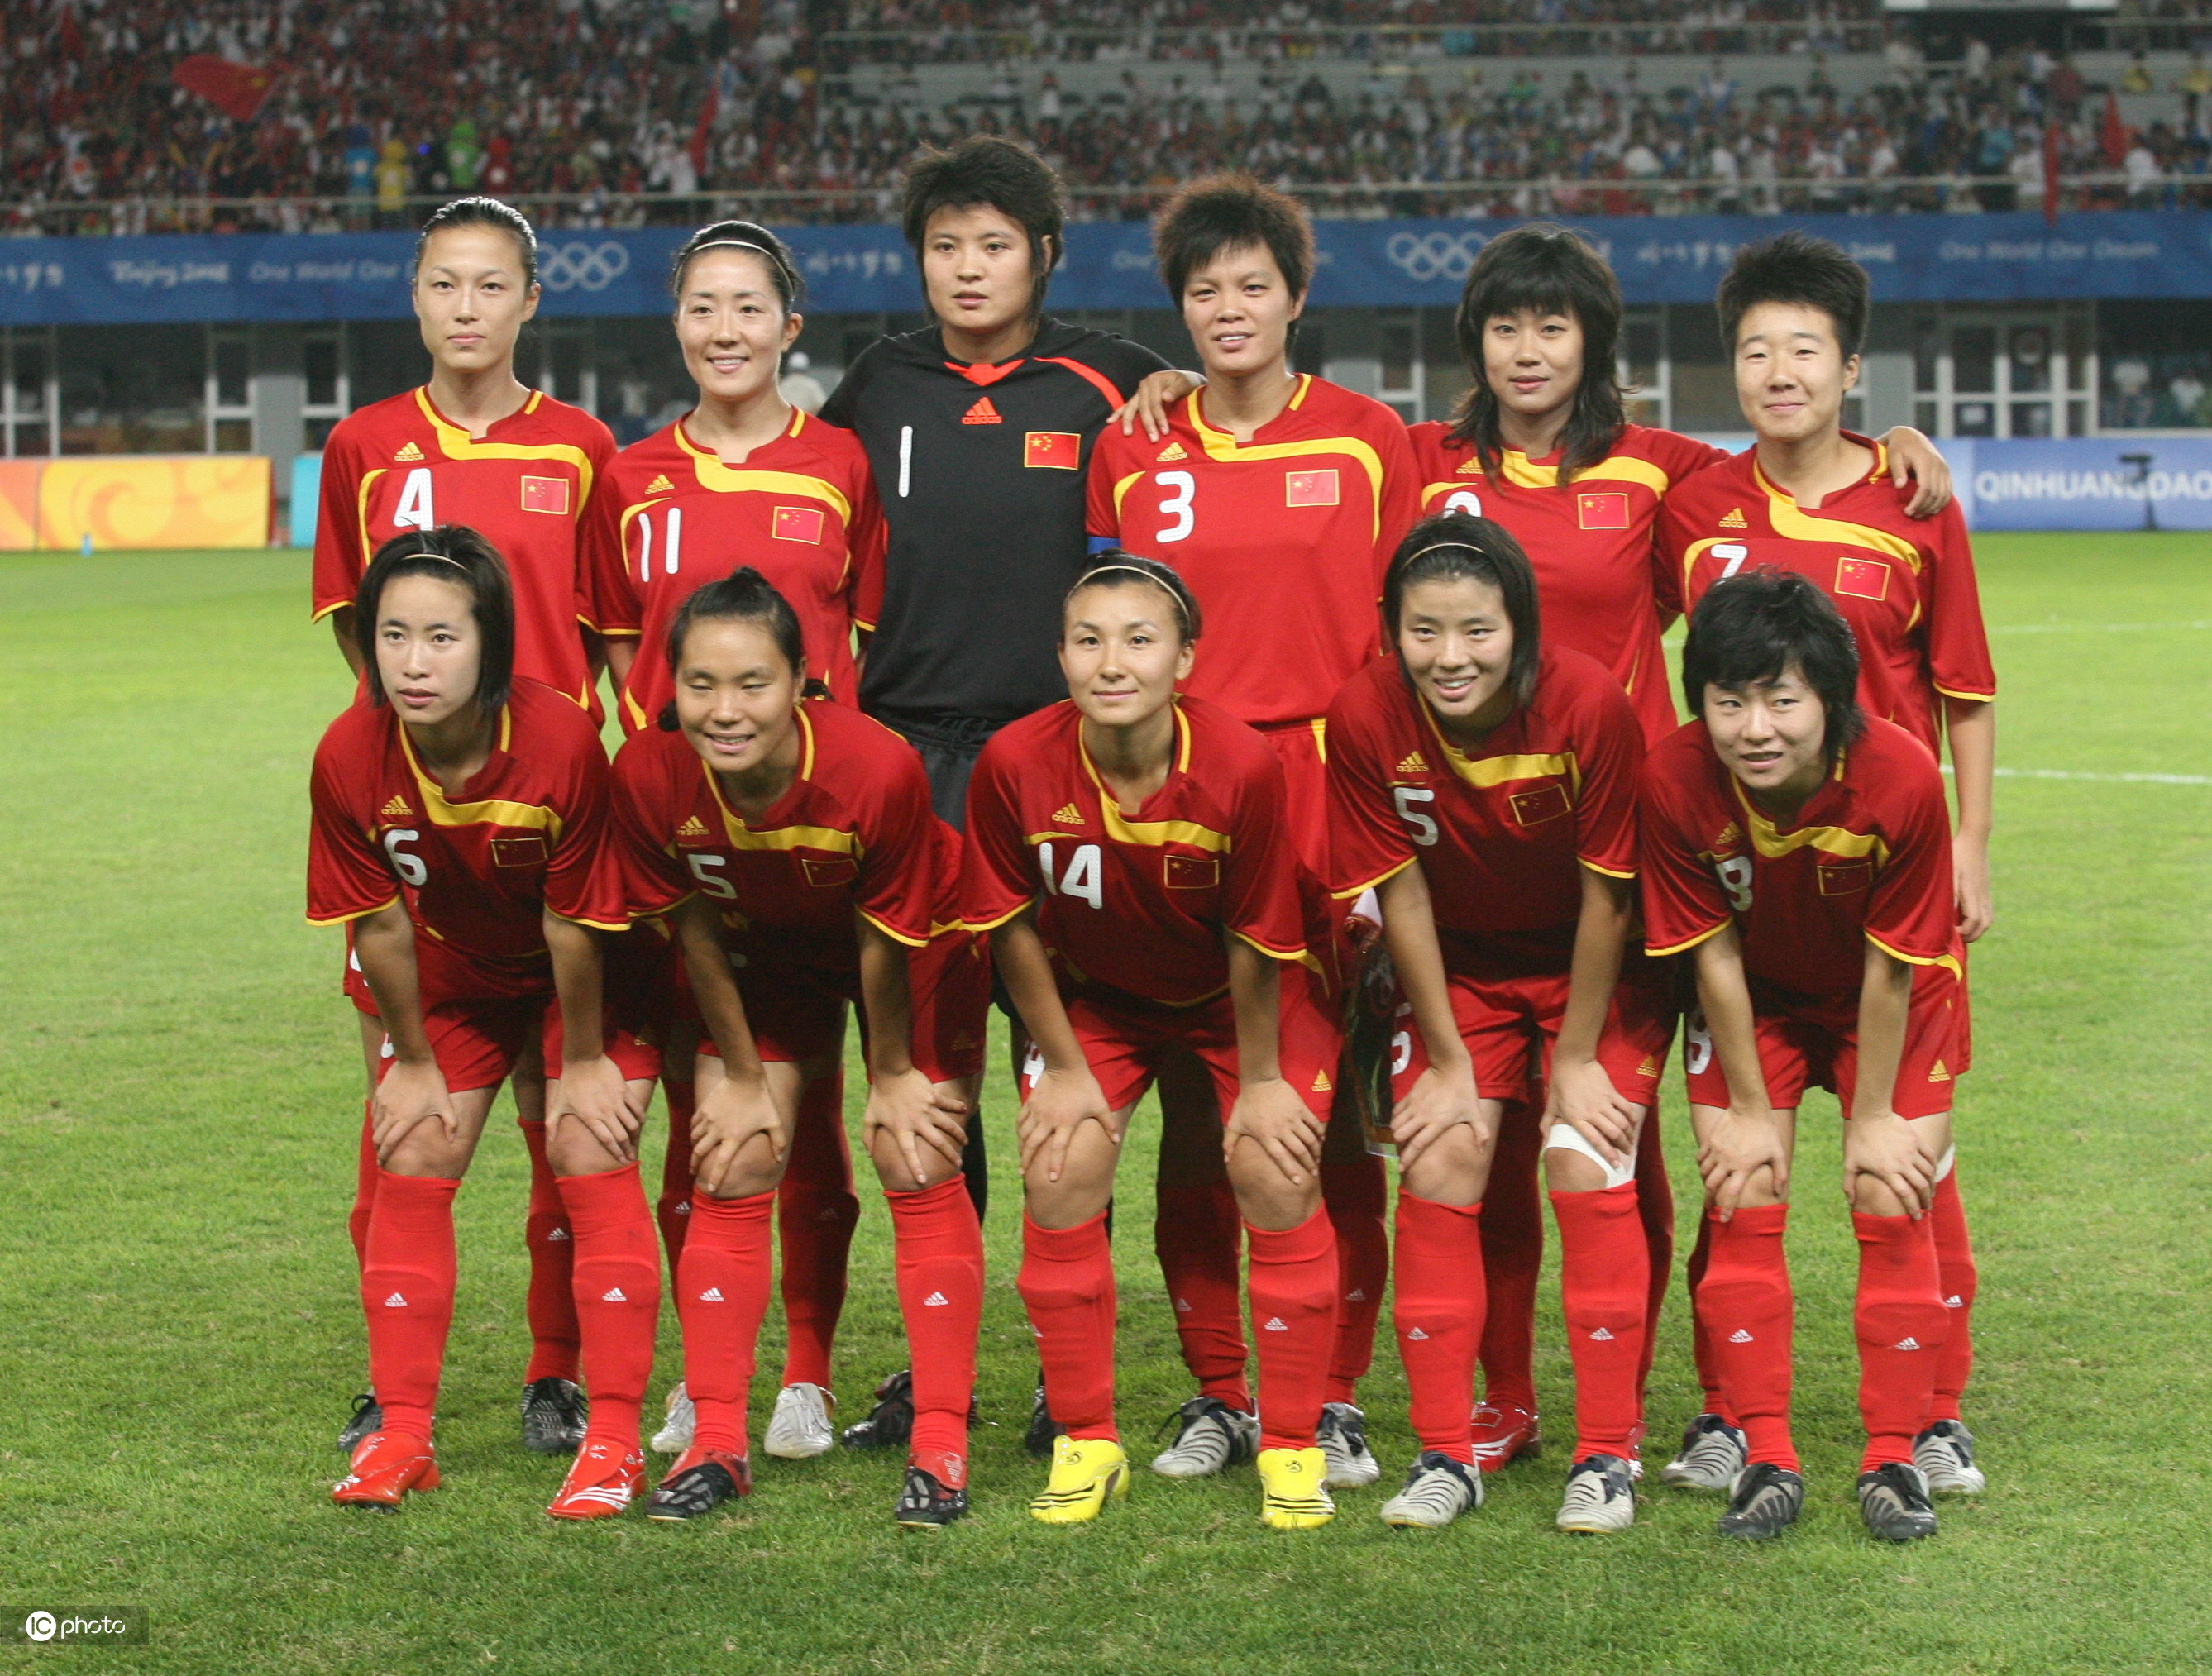 中国女足1999年出征世界杯阵容(回顾中国女足奥运征战史,96年夺银定格